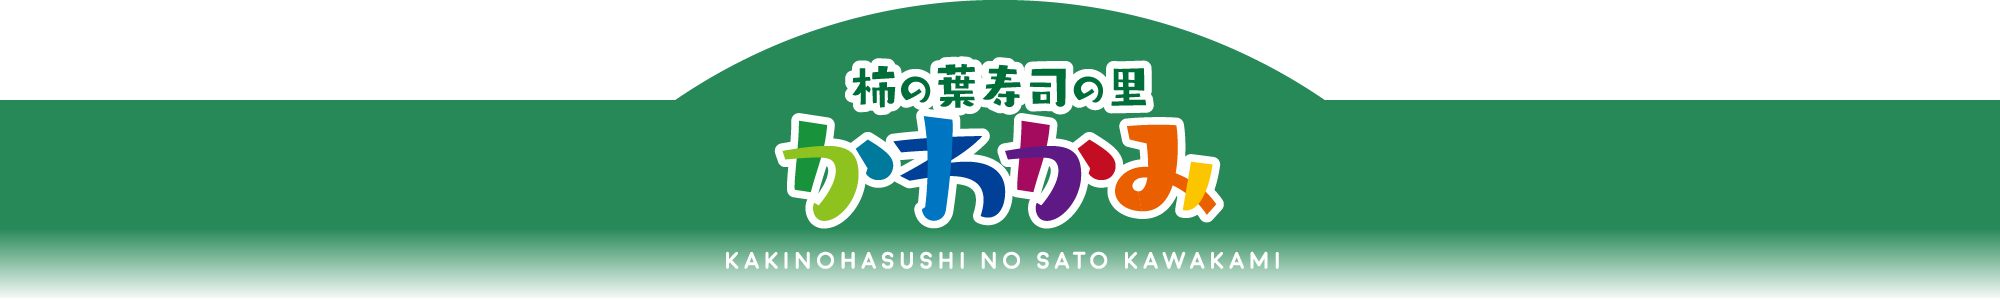 柿の葉寿司の里かわかみ KAKINOHASUSHI NO SATO KAWAKAMI